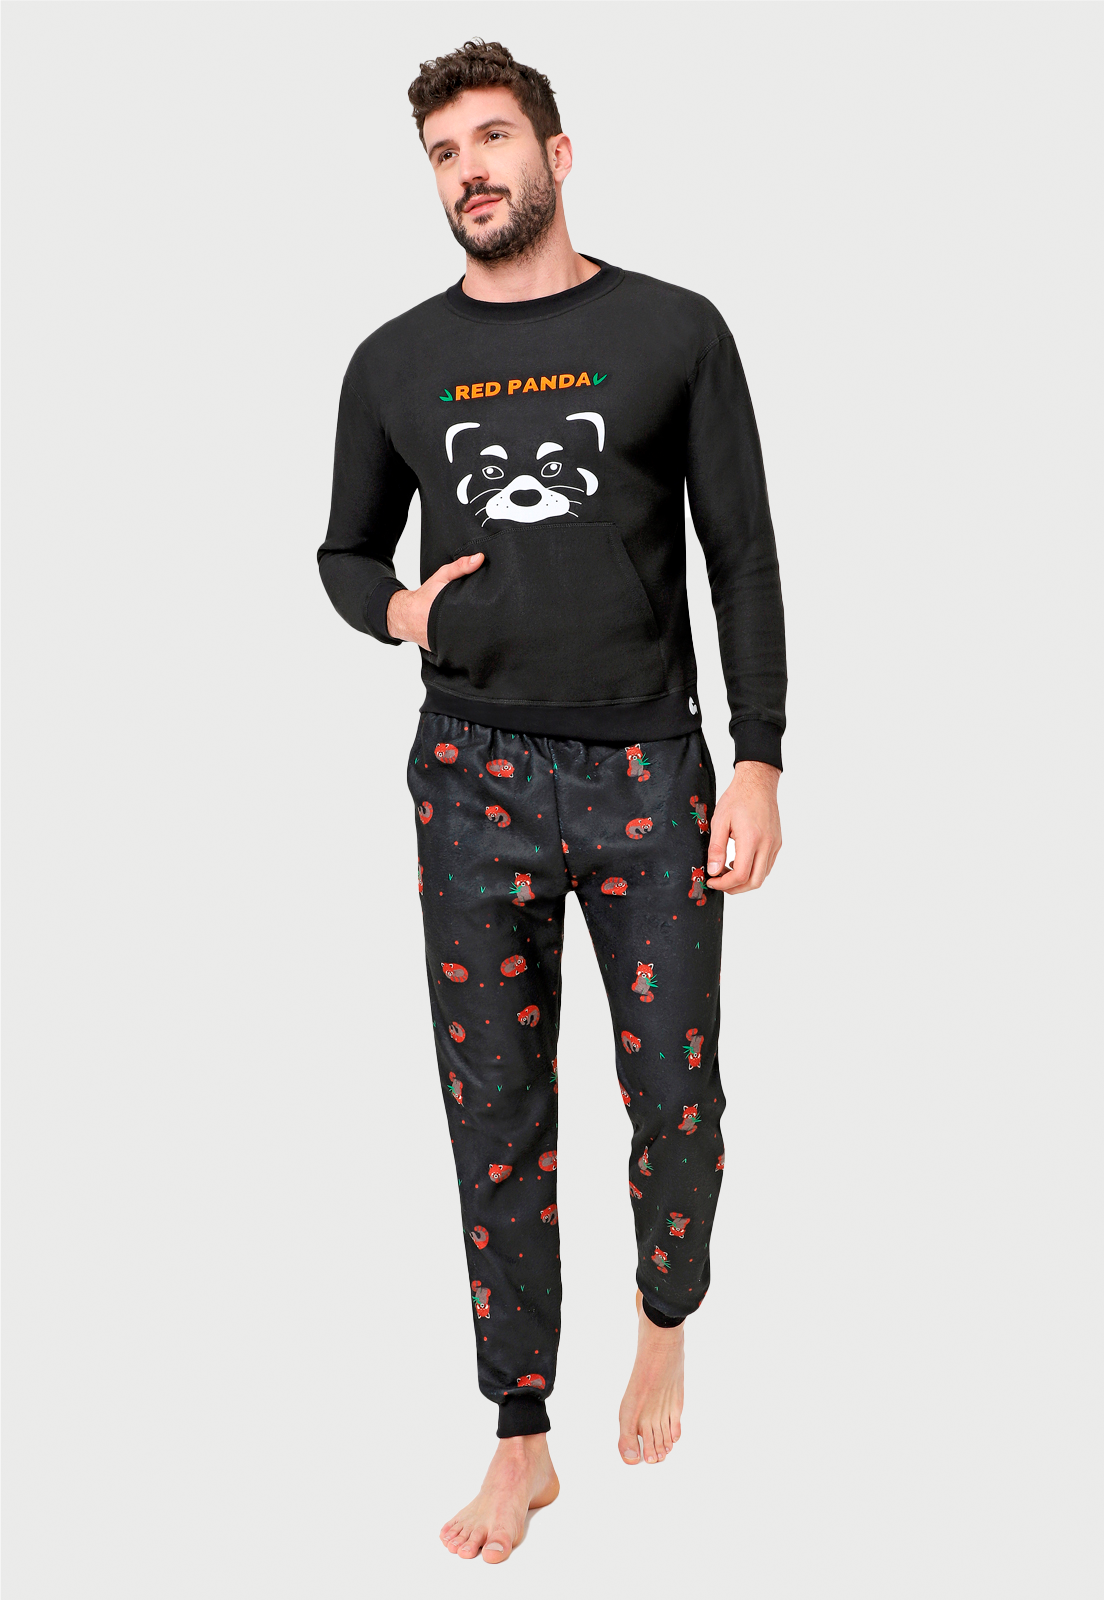 Hombre joven luciendo una pijama con un dibujo de panda rojo en el saco y un pantalon estampado con muchos pandas  rojos comiendo banboo